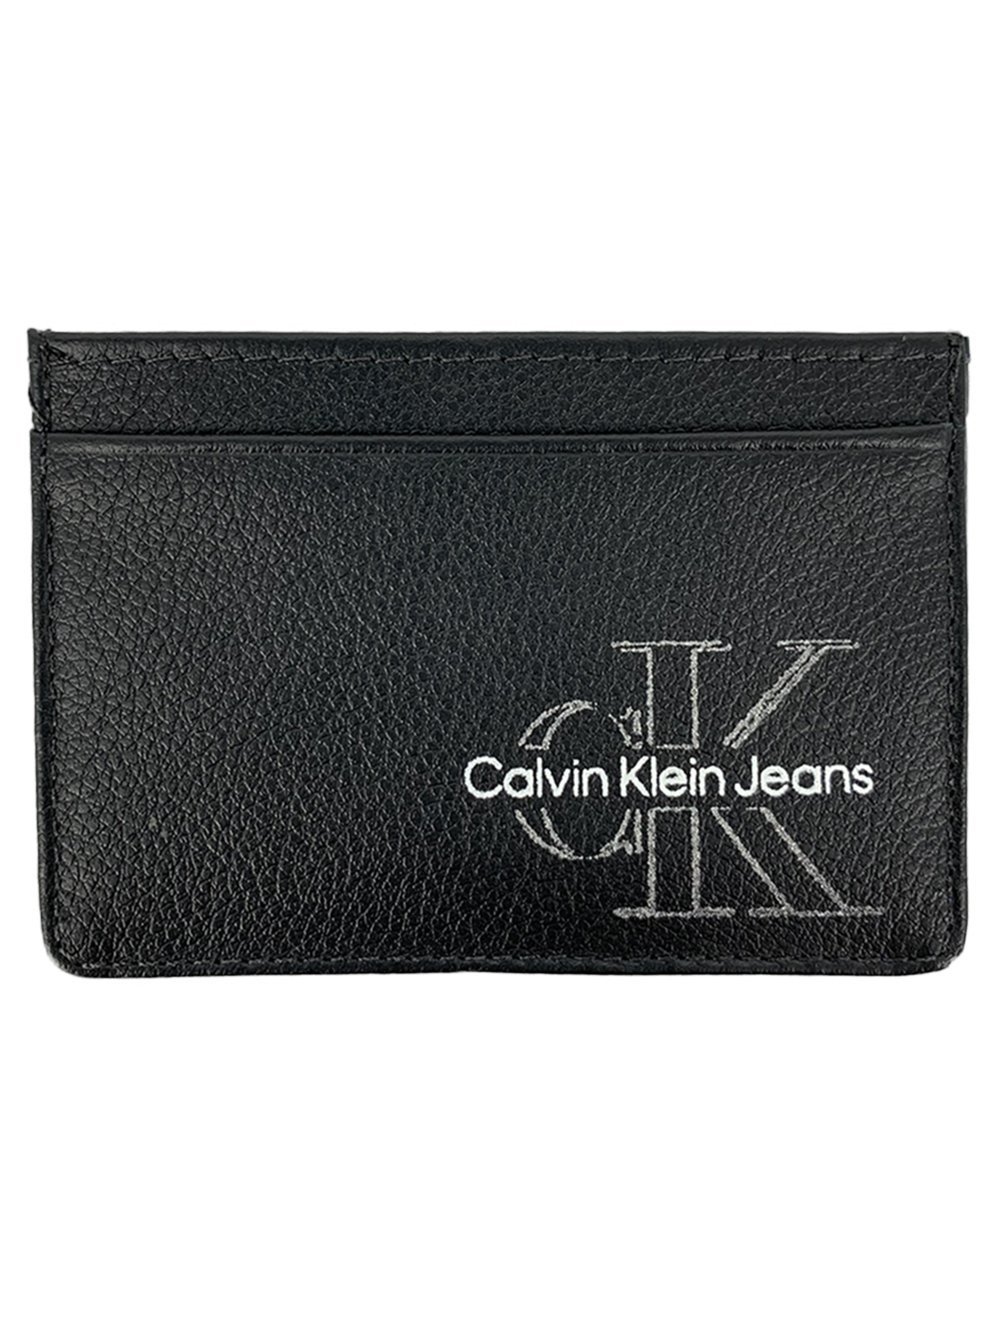 Carteira Calvin Klein Jeans Porta Cartão Couro Floater Monogram Logo Preta